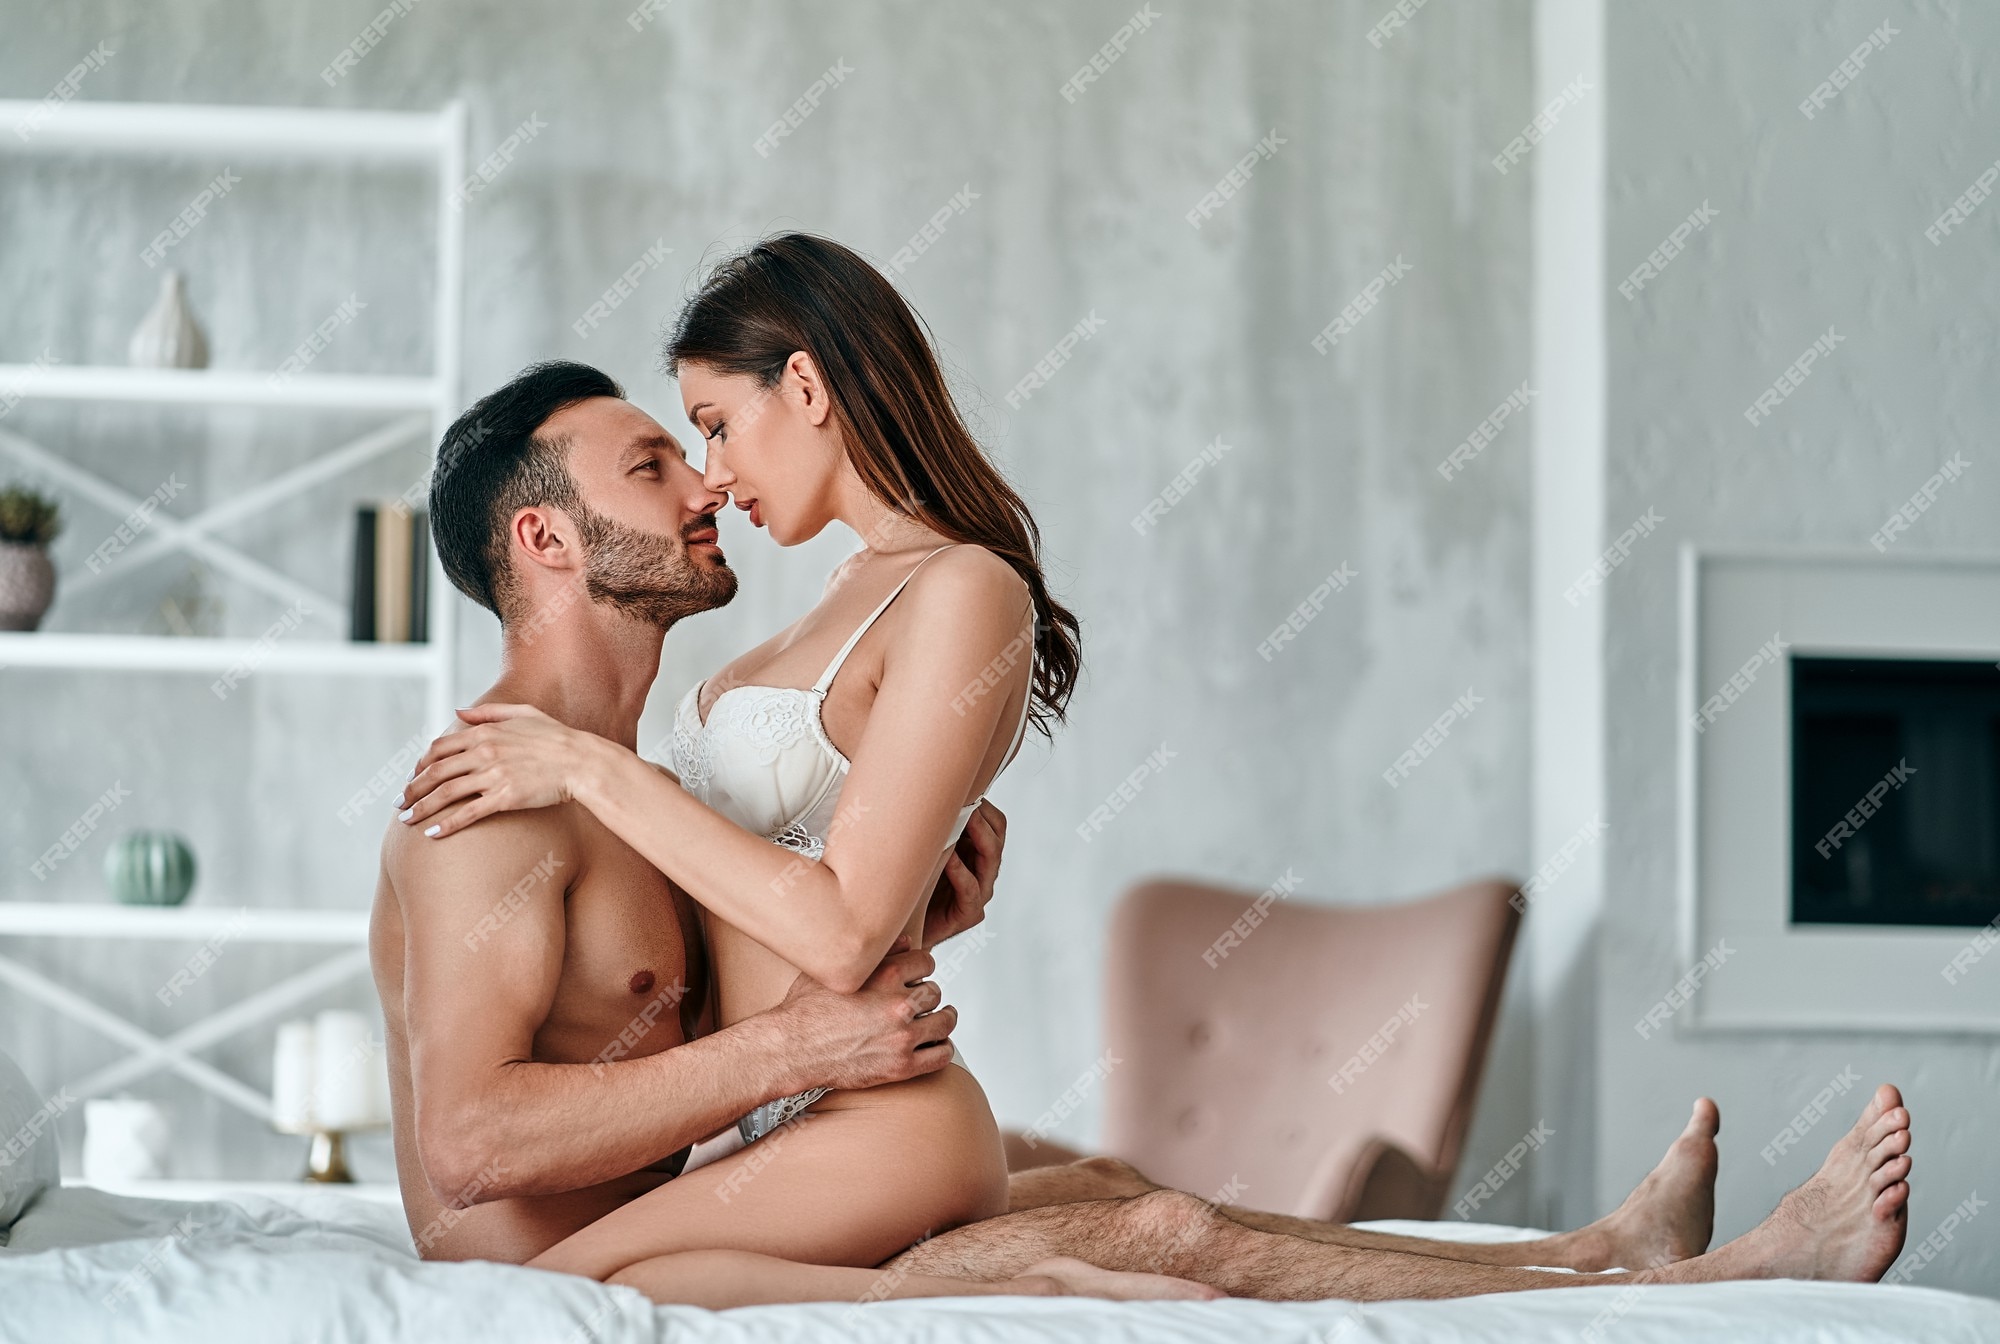 Naked Women And Men Having Sex oslo beste